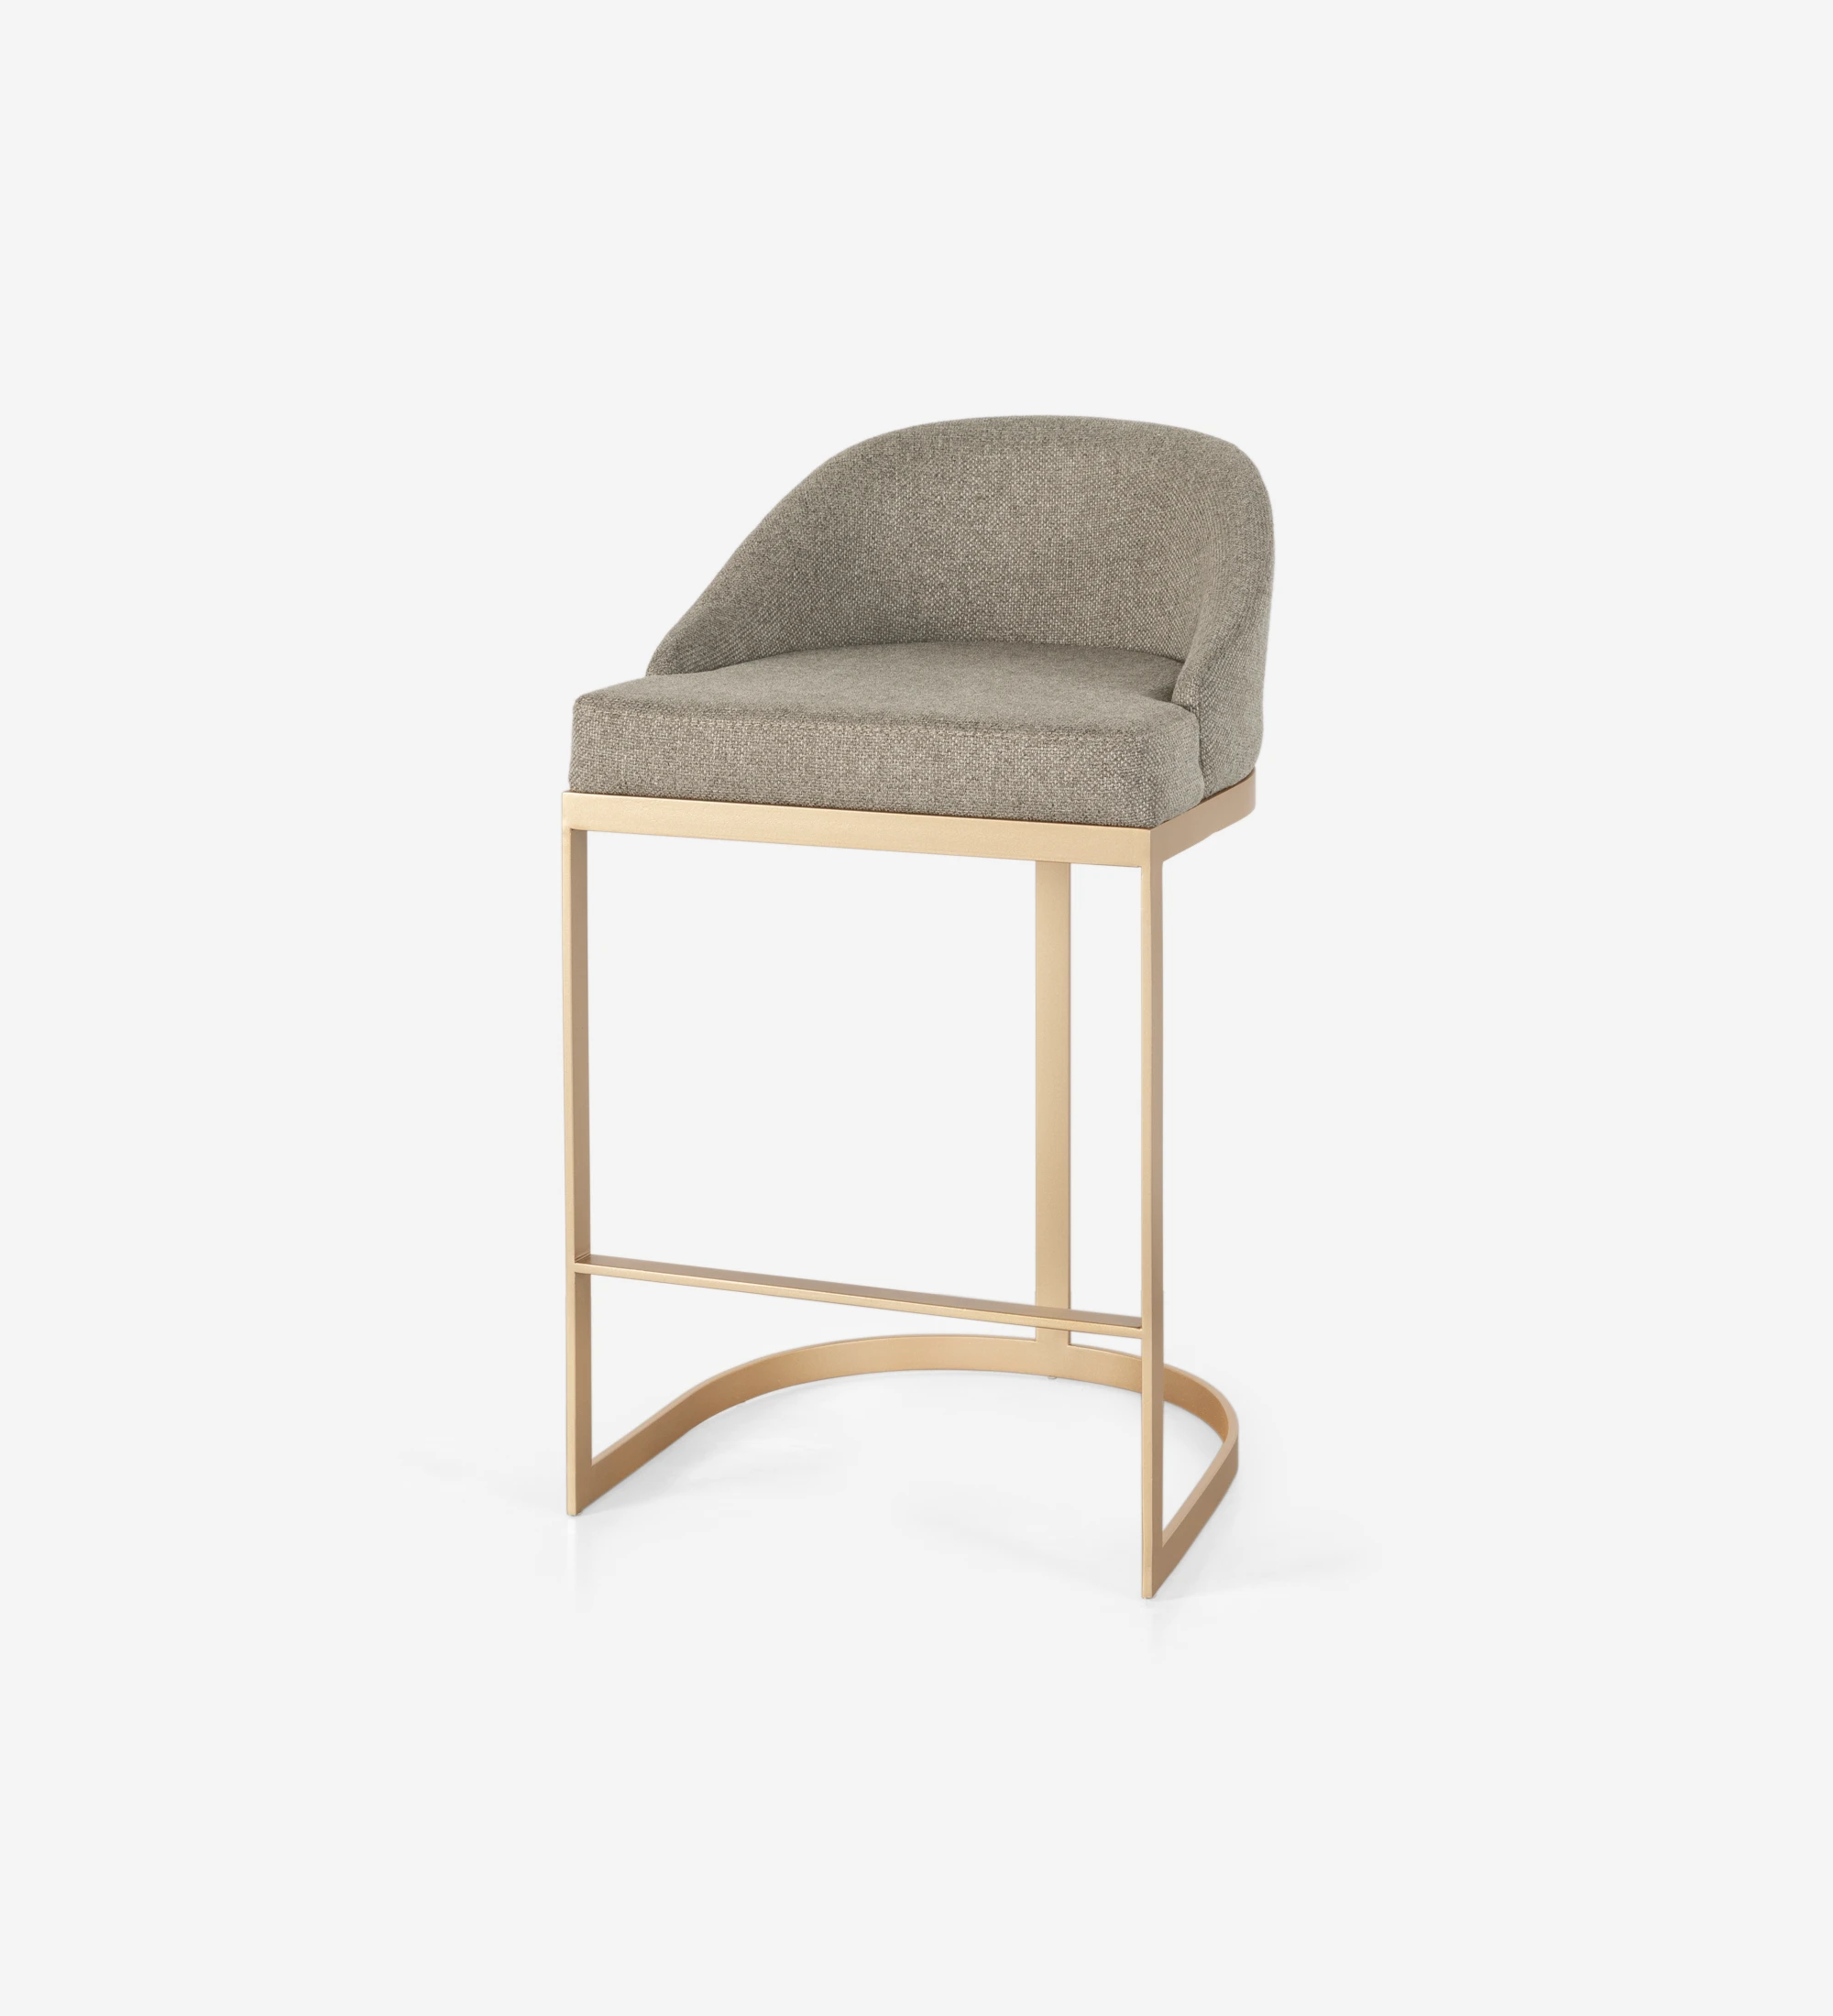 Tabouret avec assise et dossier recouverts de tissu, avec structure en métal laqué doré